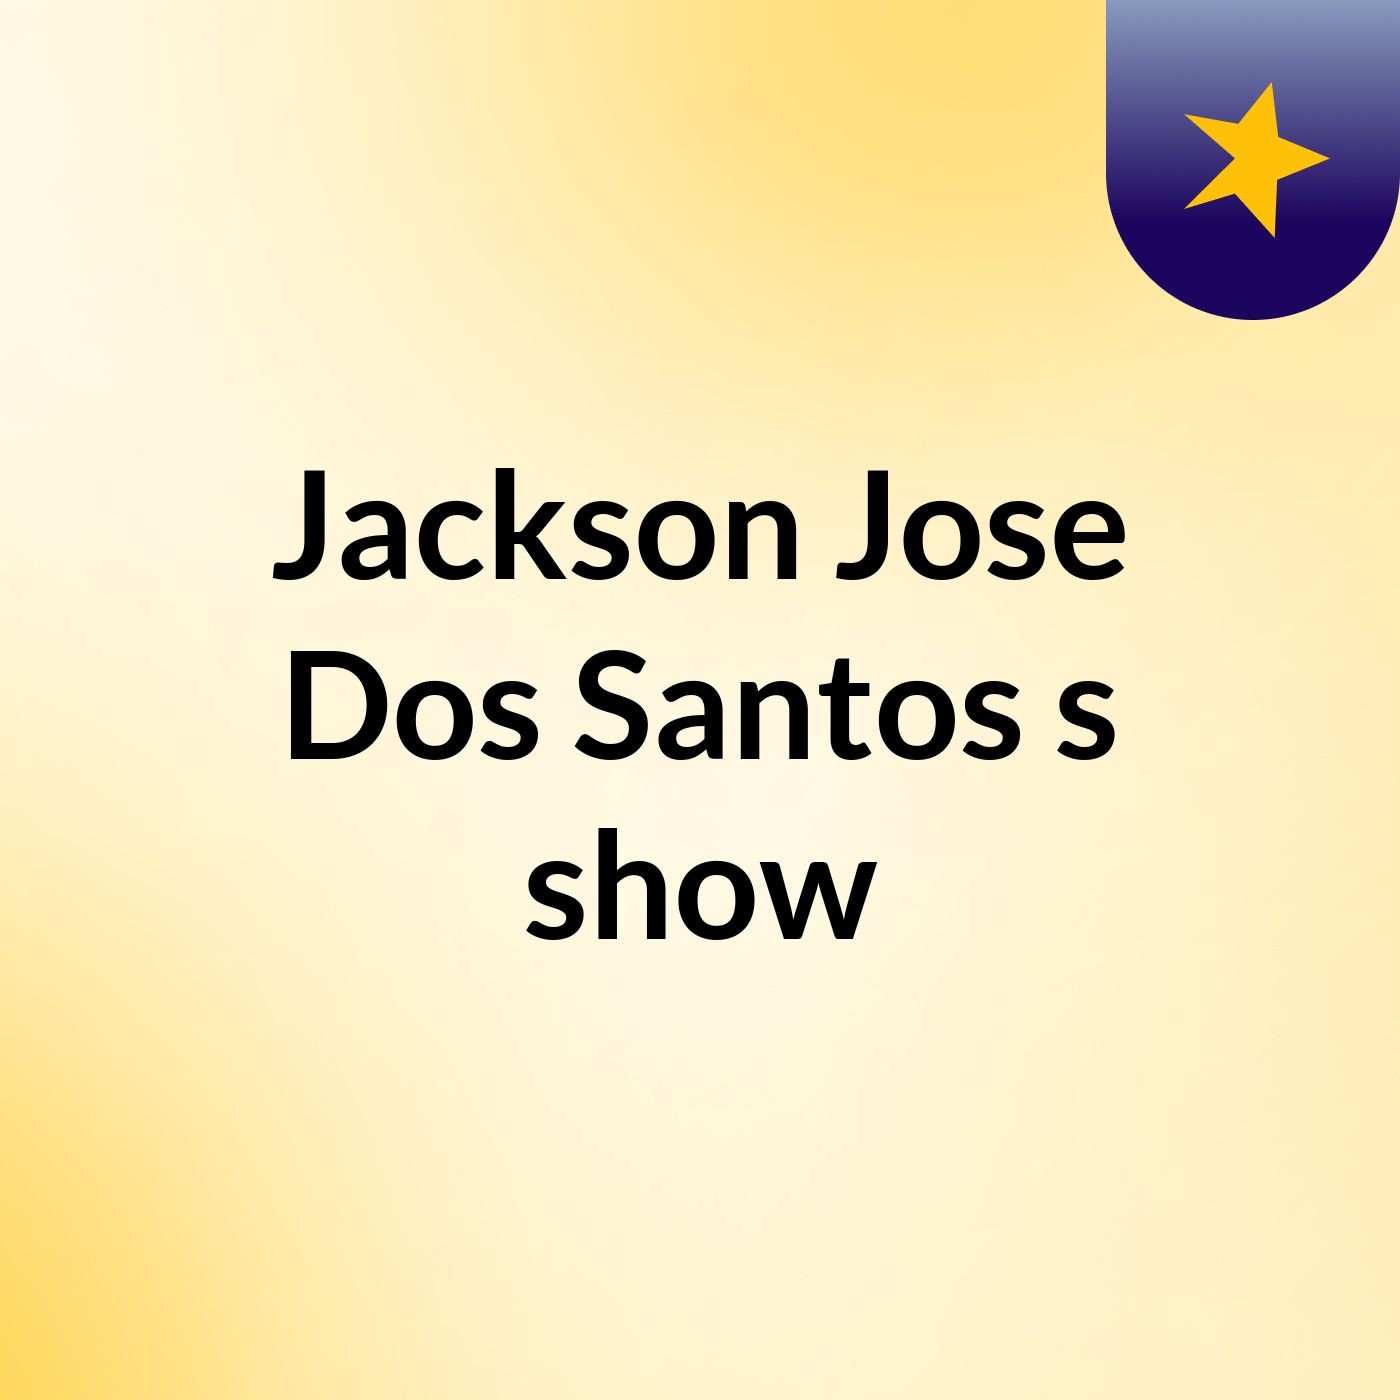 Jackson Jose Dos Santos's show